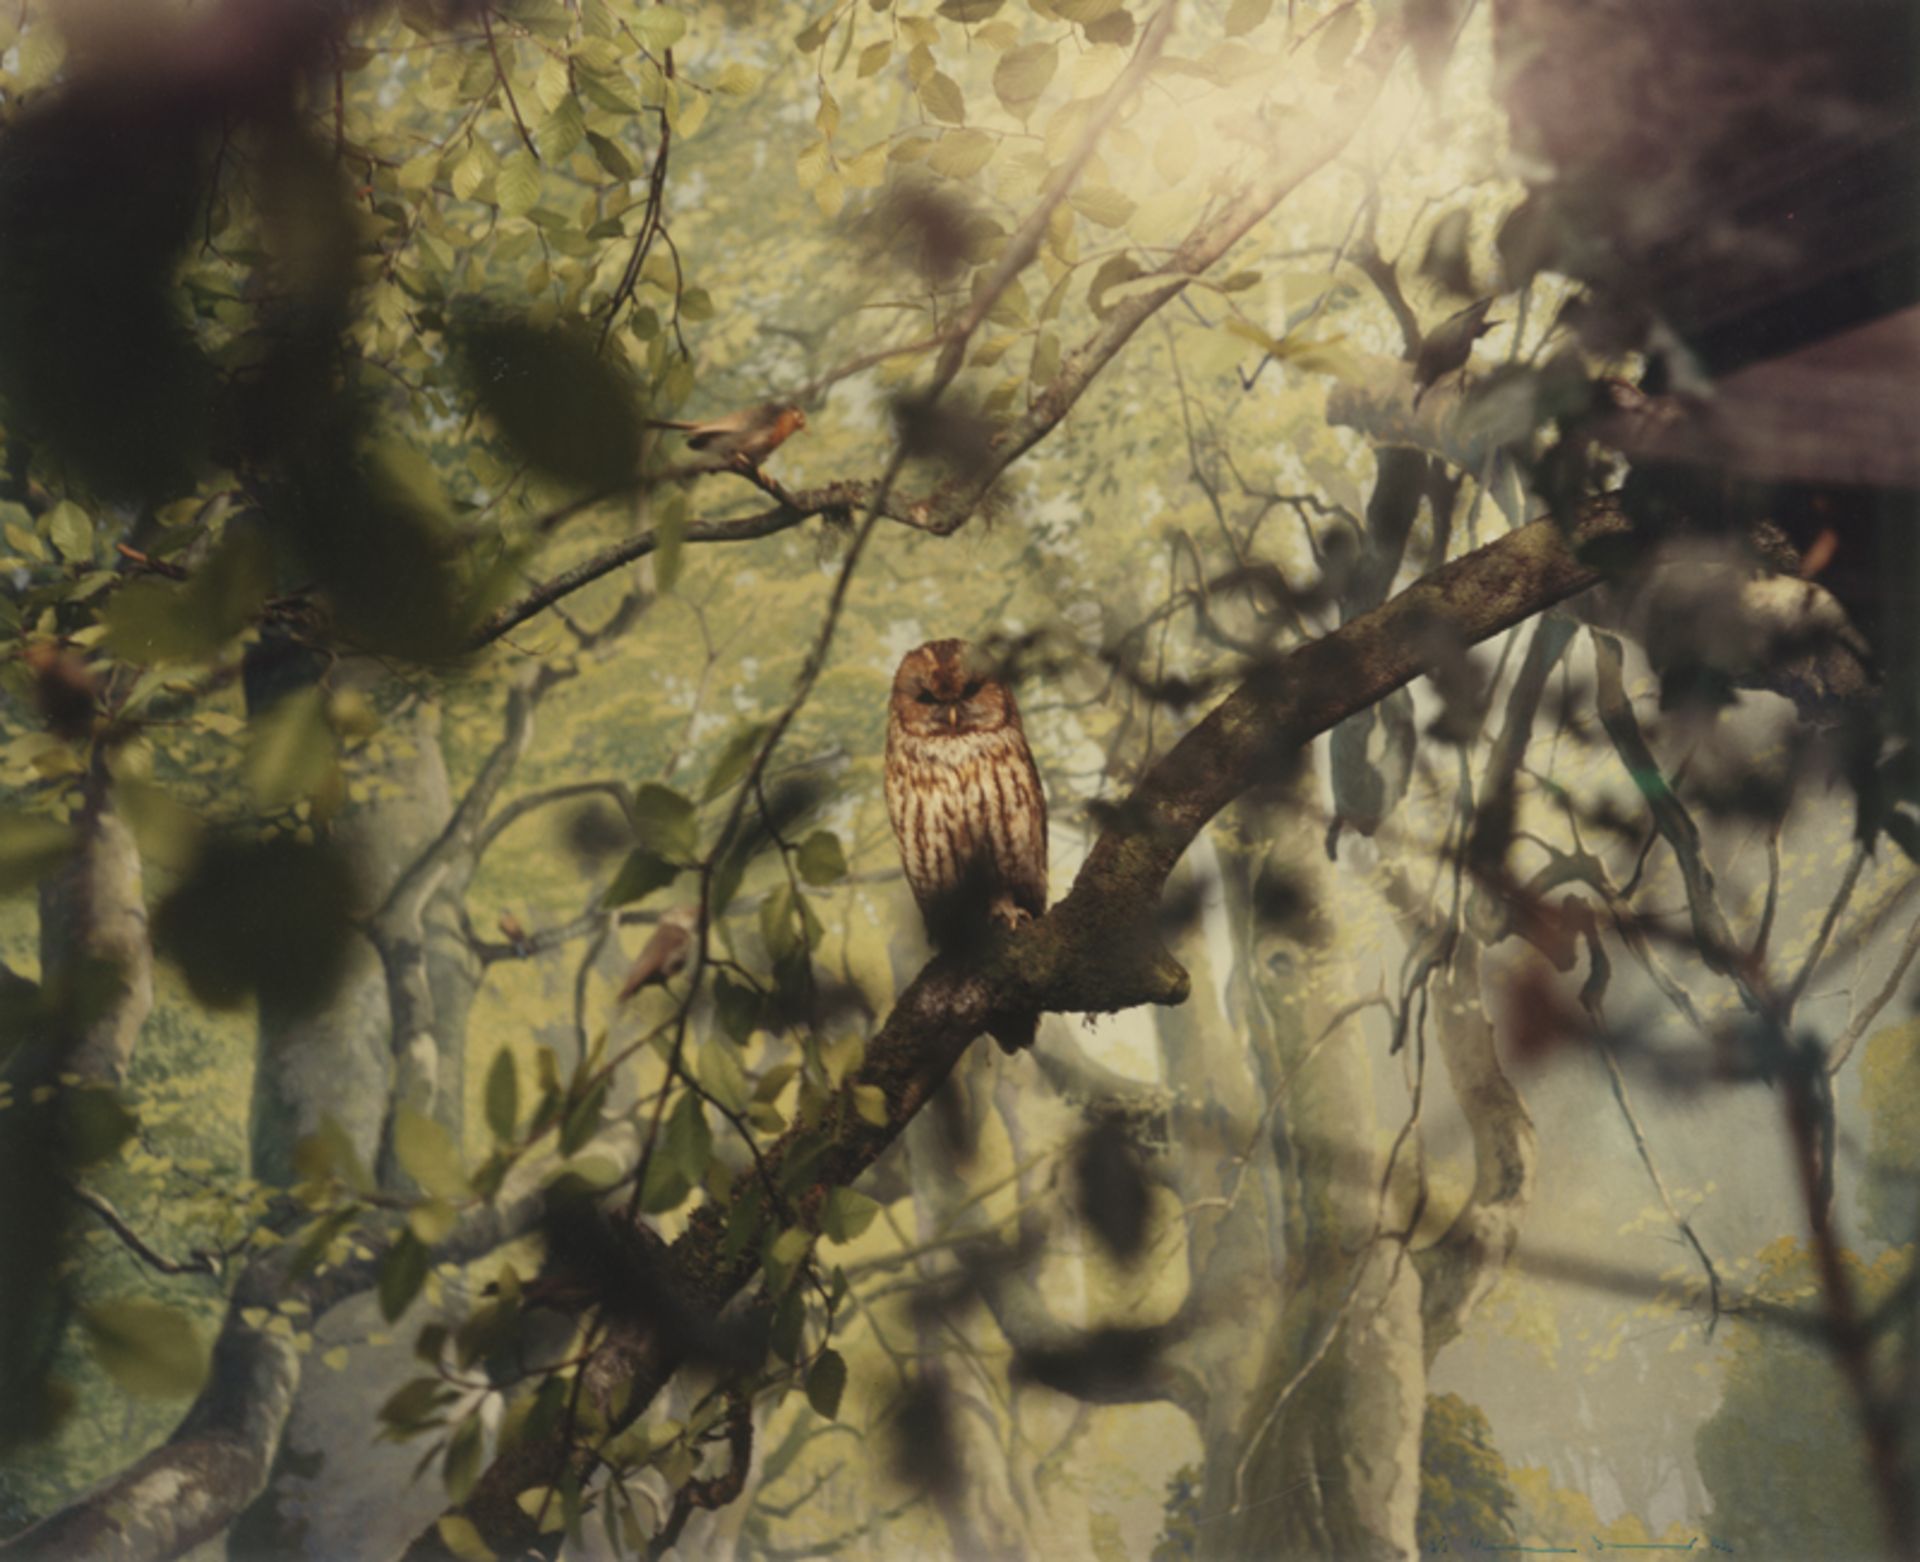 Koenig, Wilmar: Owl from the series "Le Bestiaire"